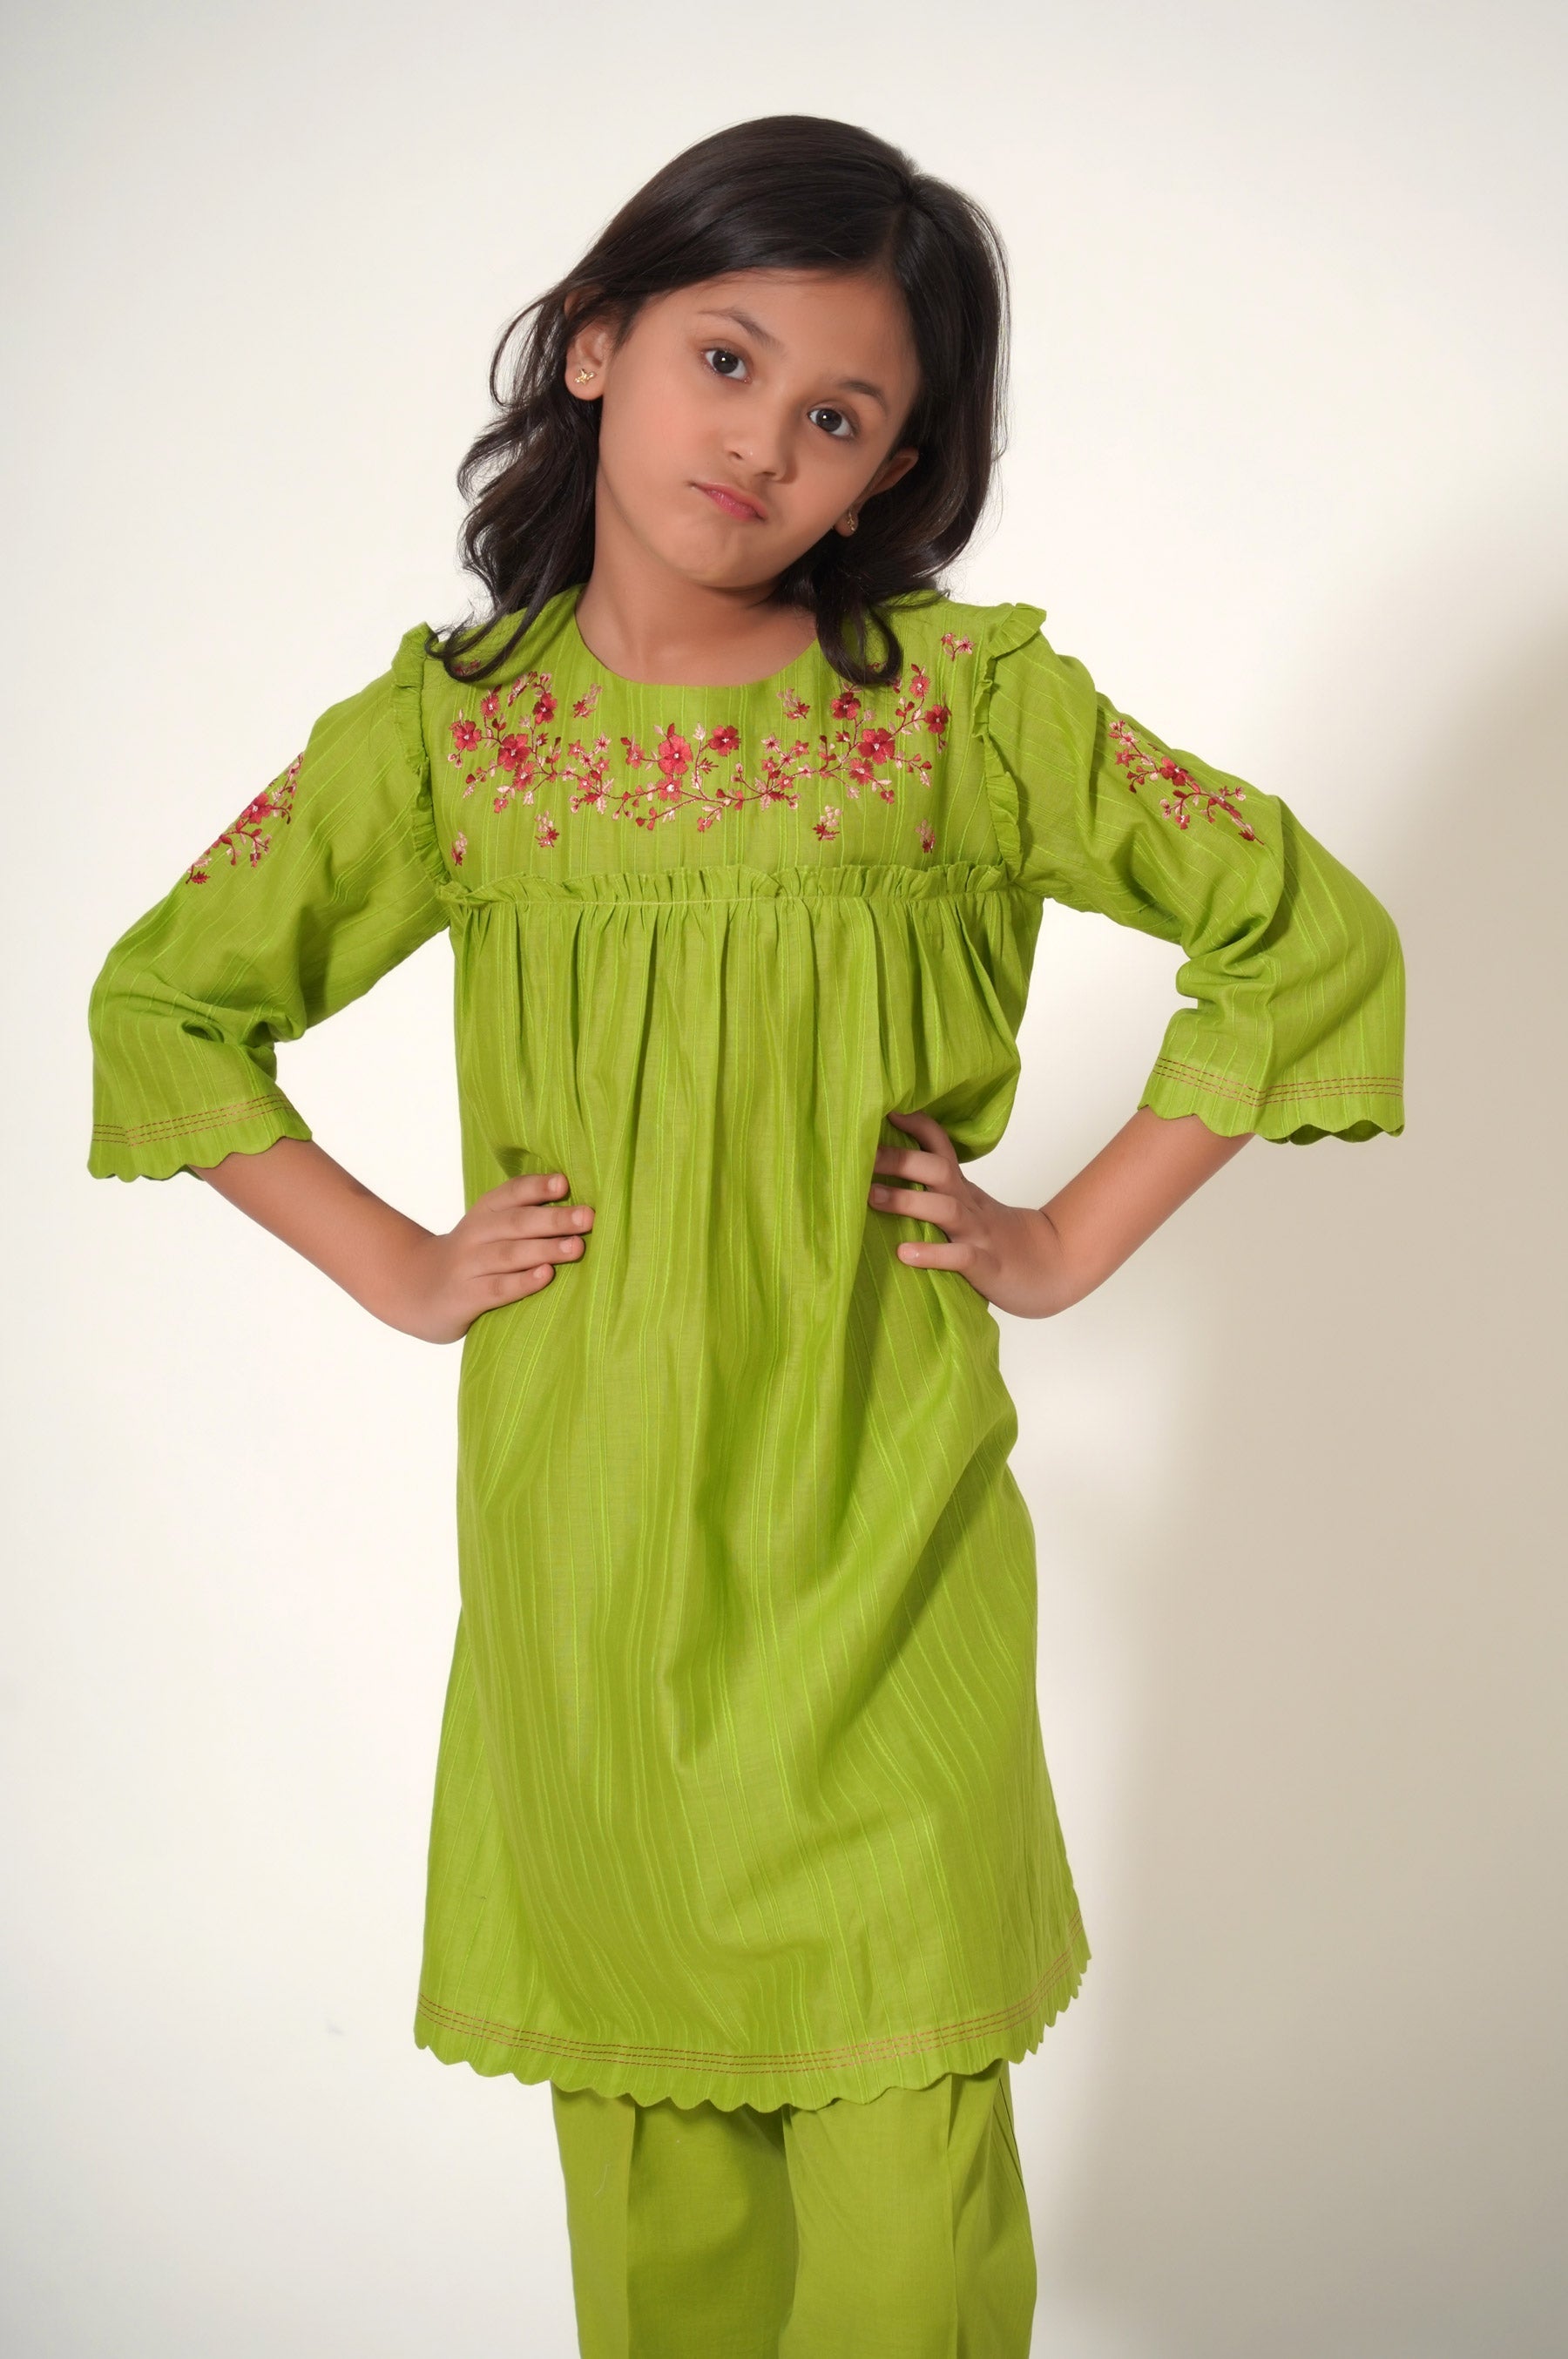 Alina Moda Frock बच्चों की ड्रेस 3 से 12 साल की लड़कियों के लिए, मैरून :  Amazon.in: कपड़े और एक्सेसरीज़